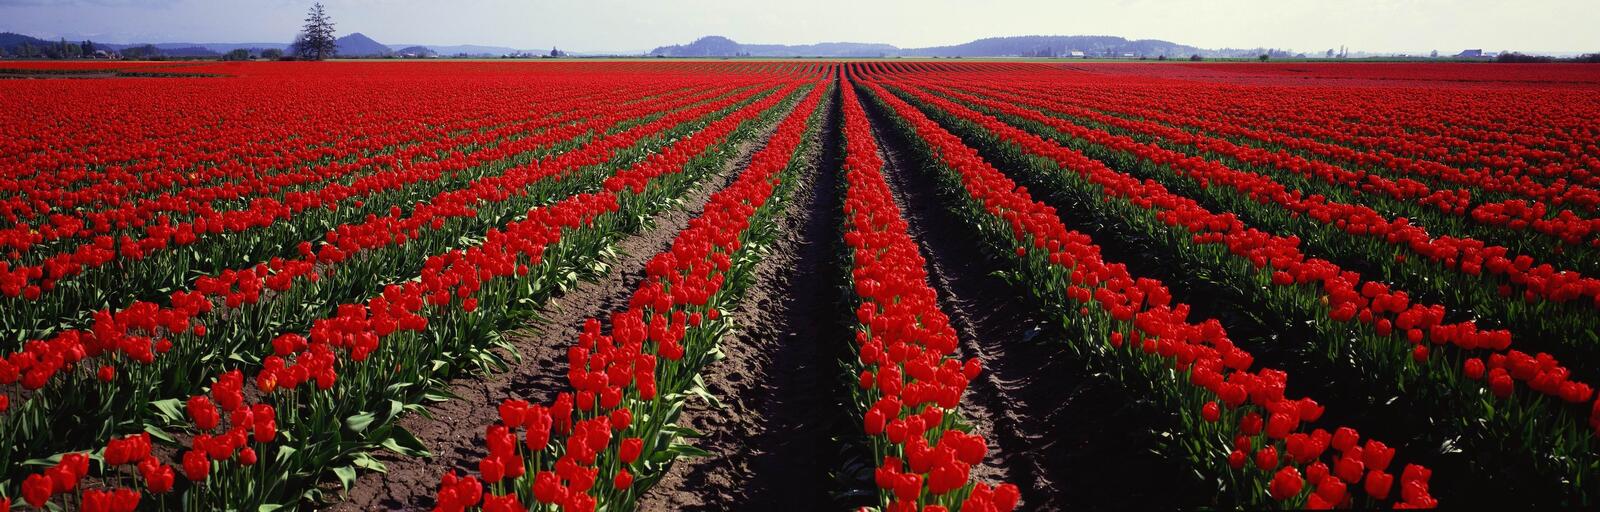 Бесплатное фото Поле с красными тюльпанами